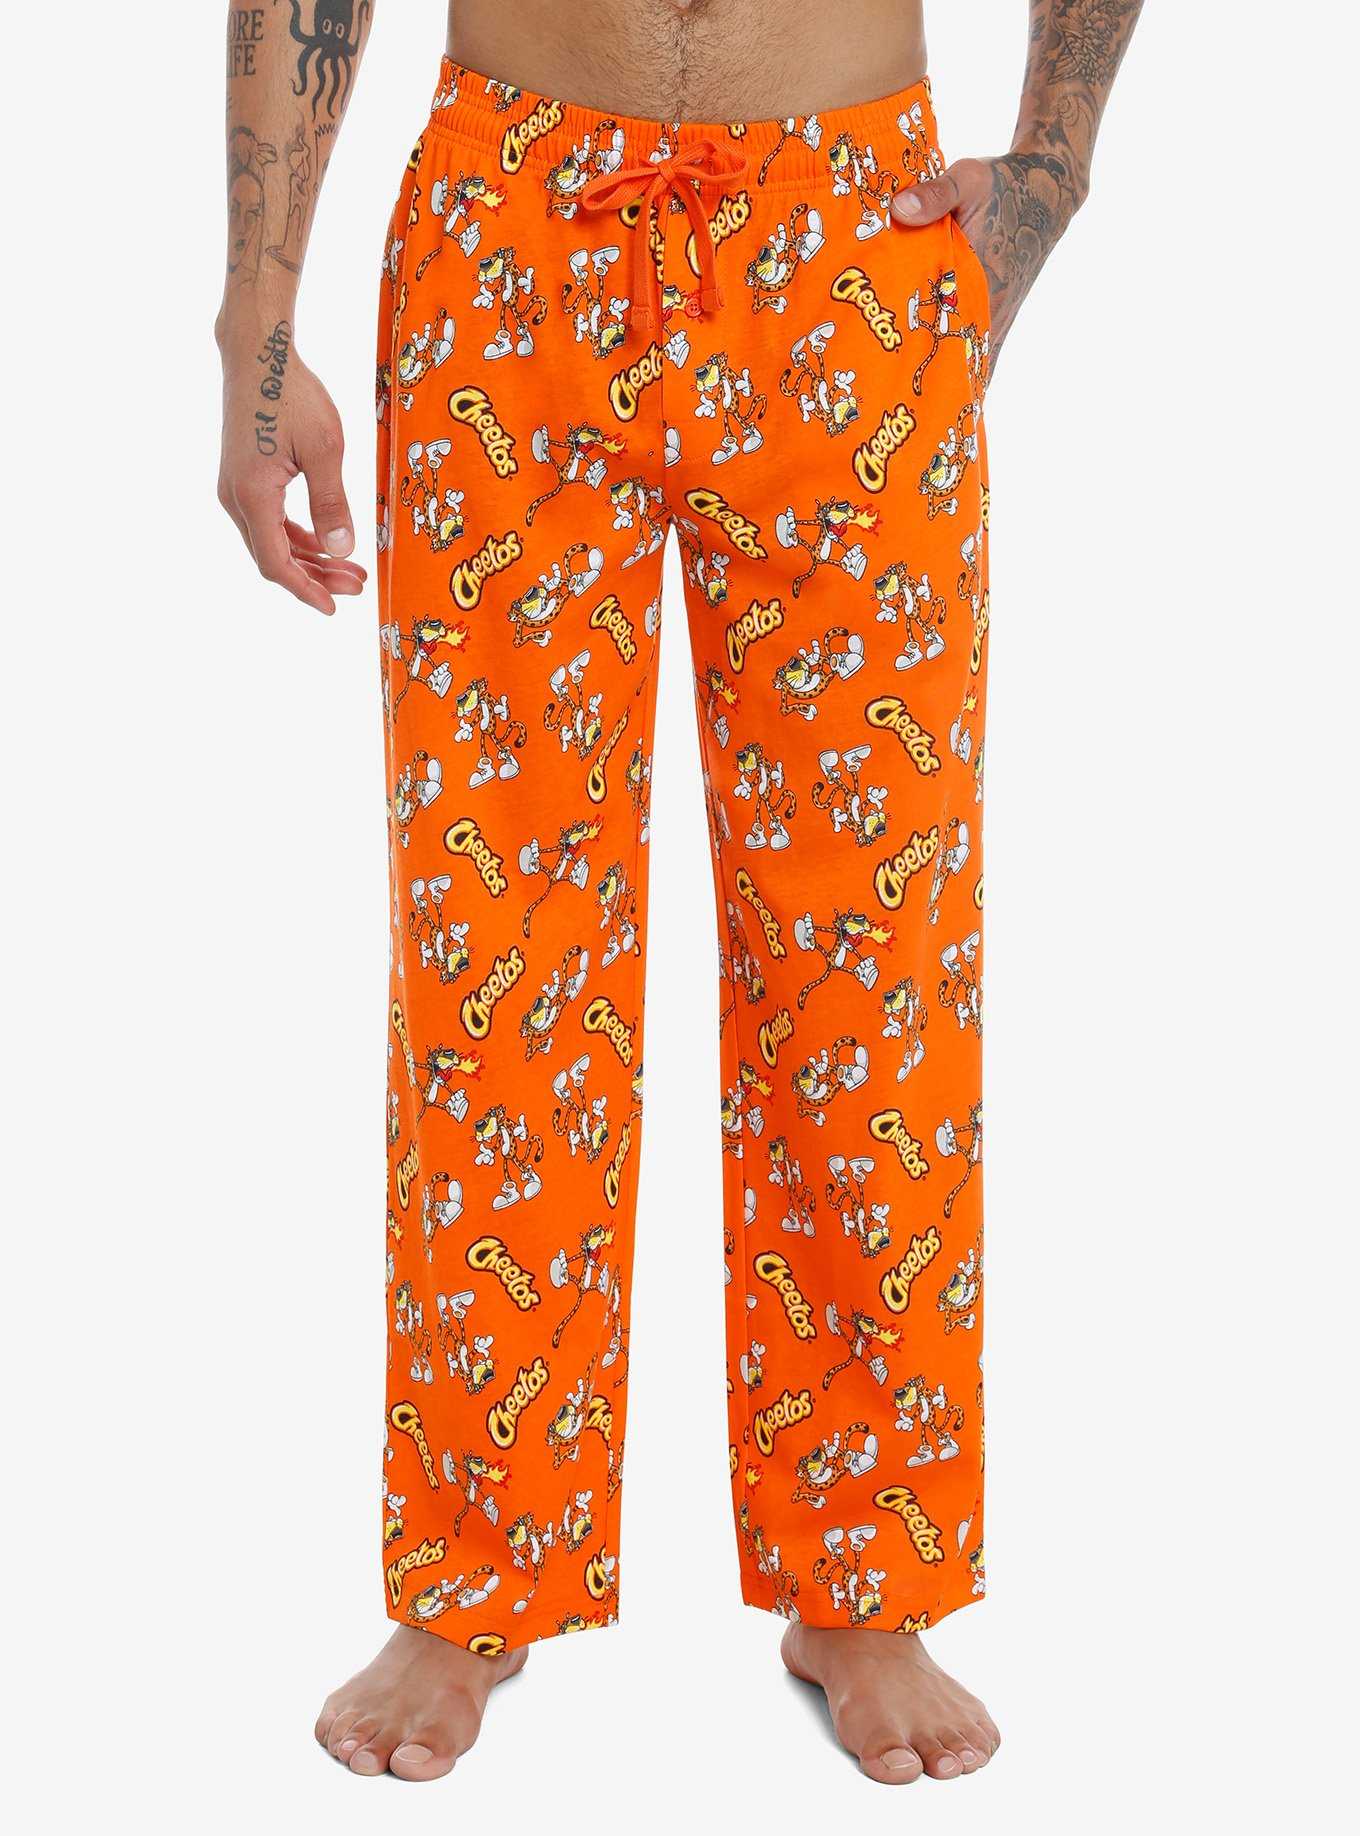 Cheetos Chester Cheetah Pajama Pants, , hi-res